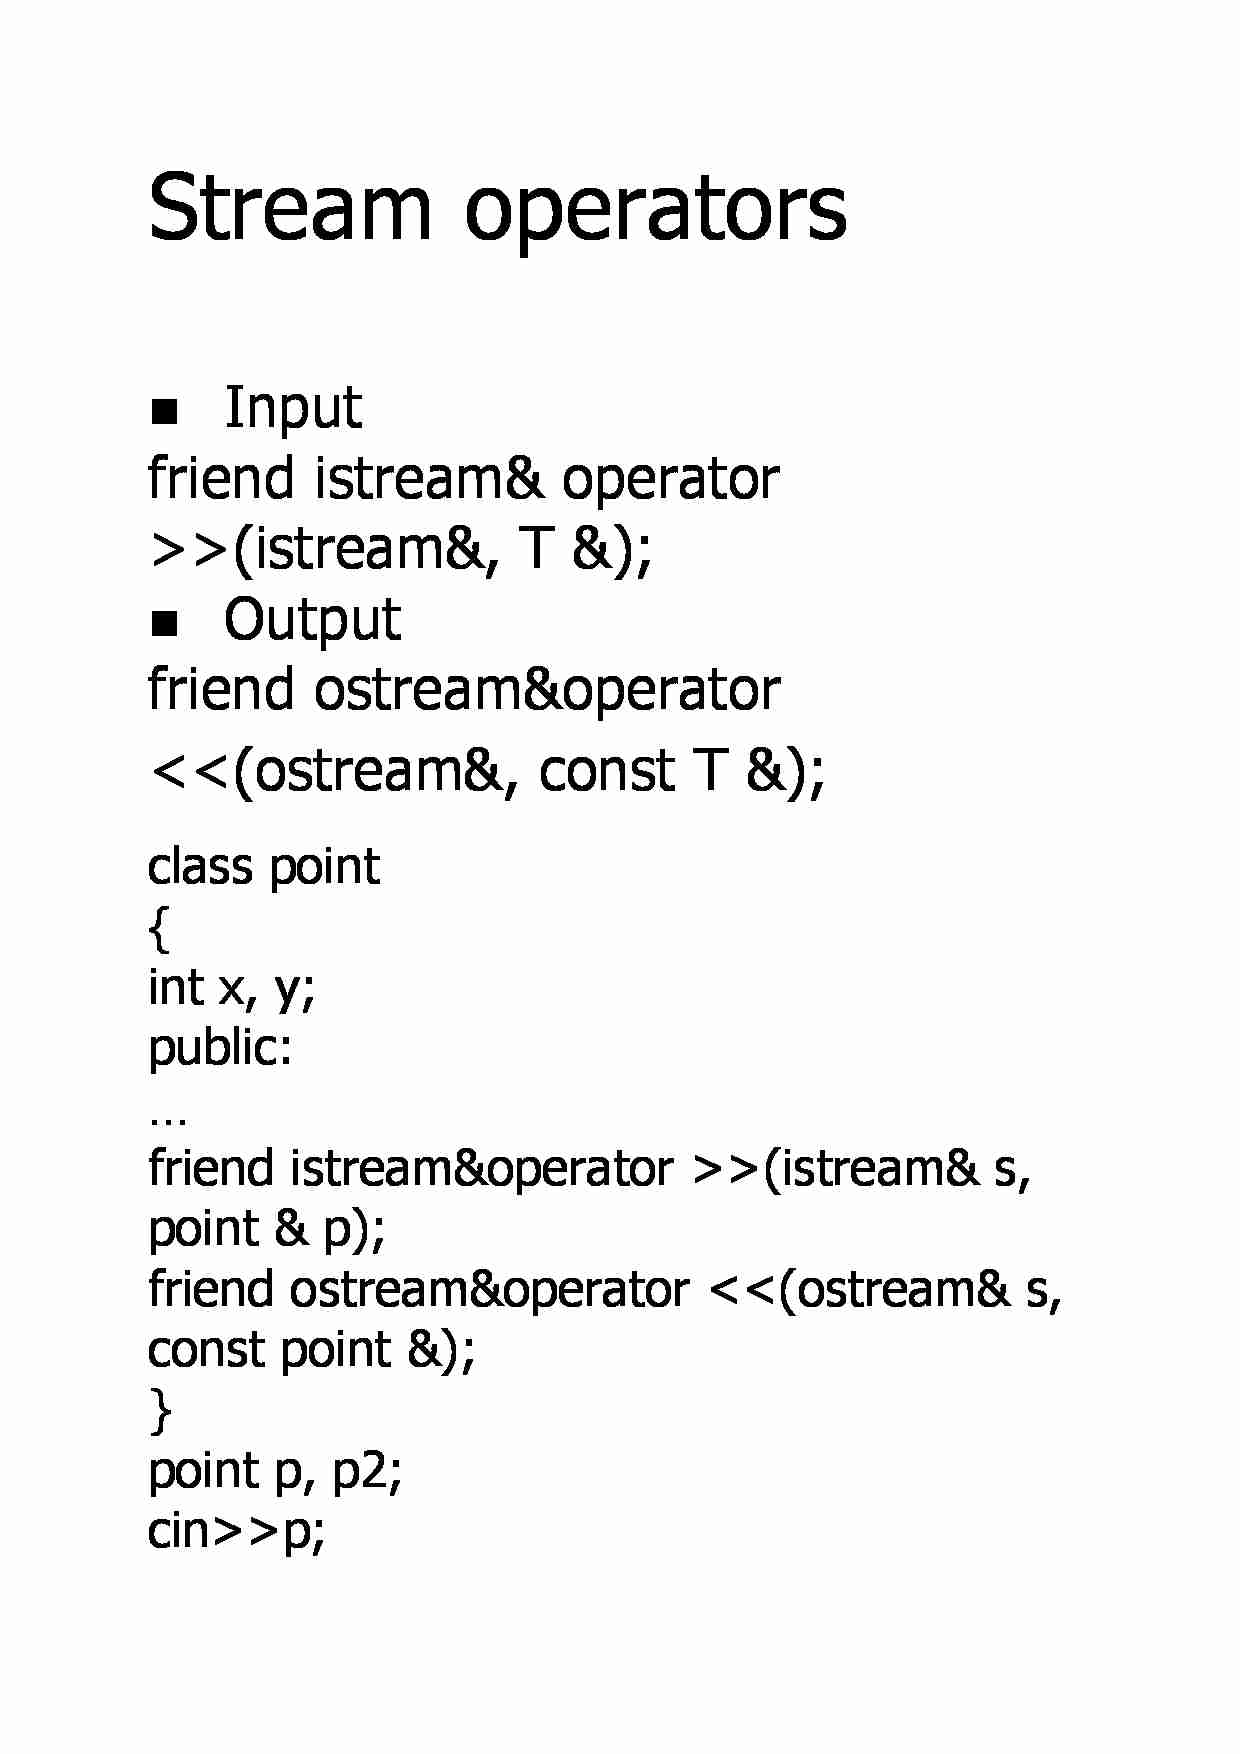 Stream operators - strona 1